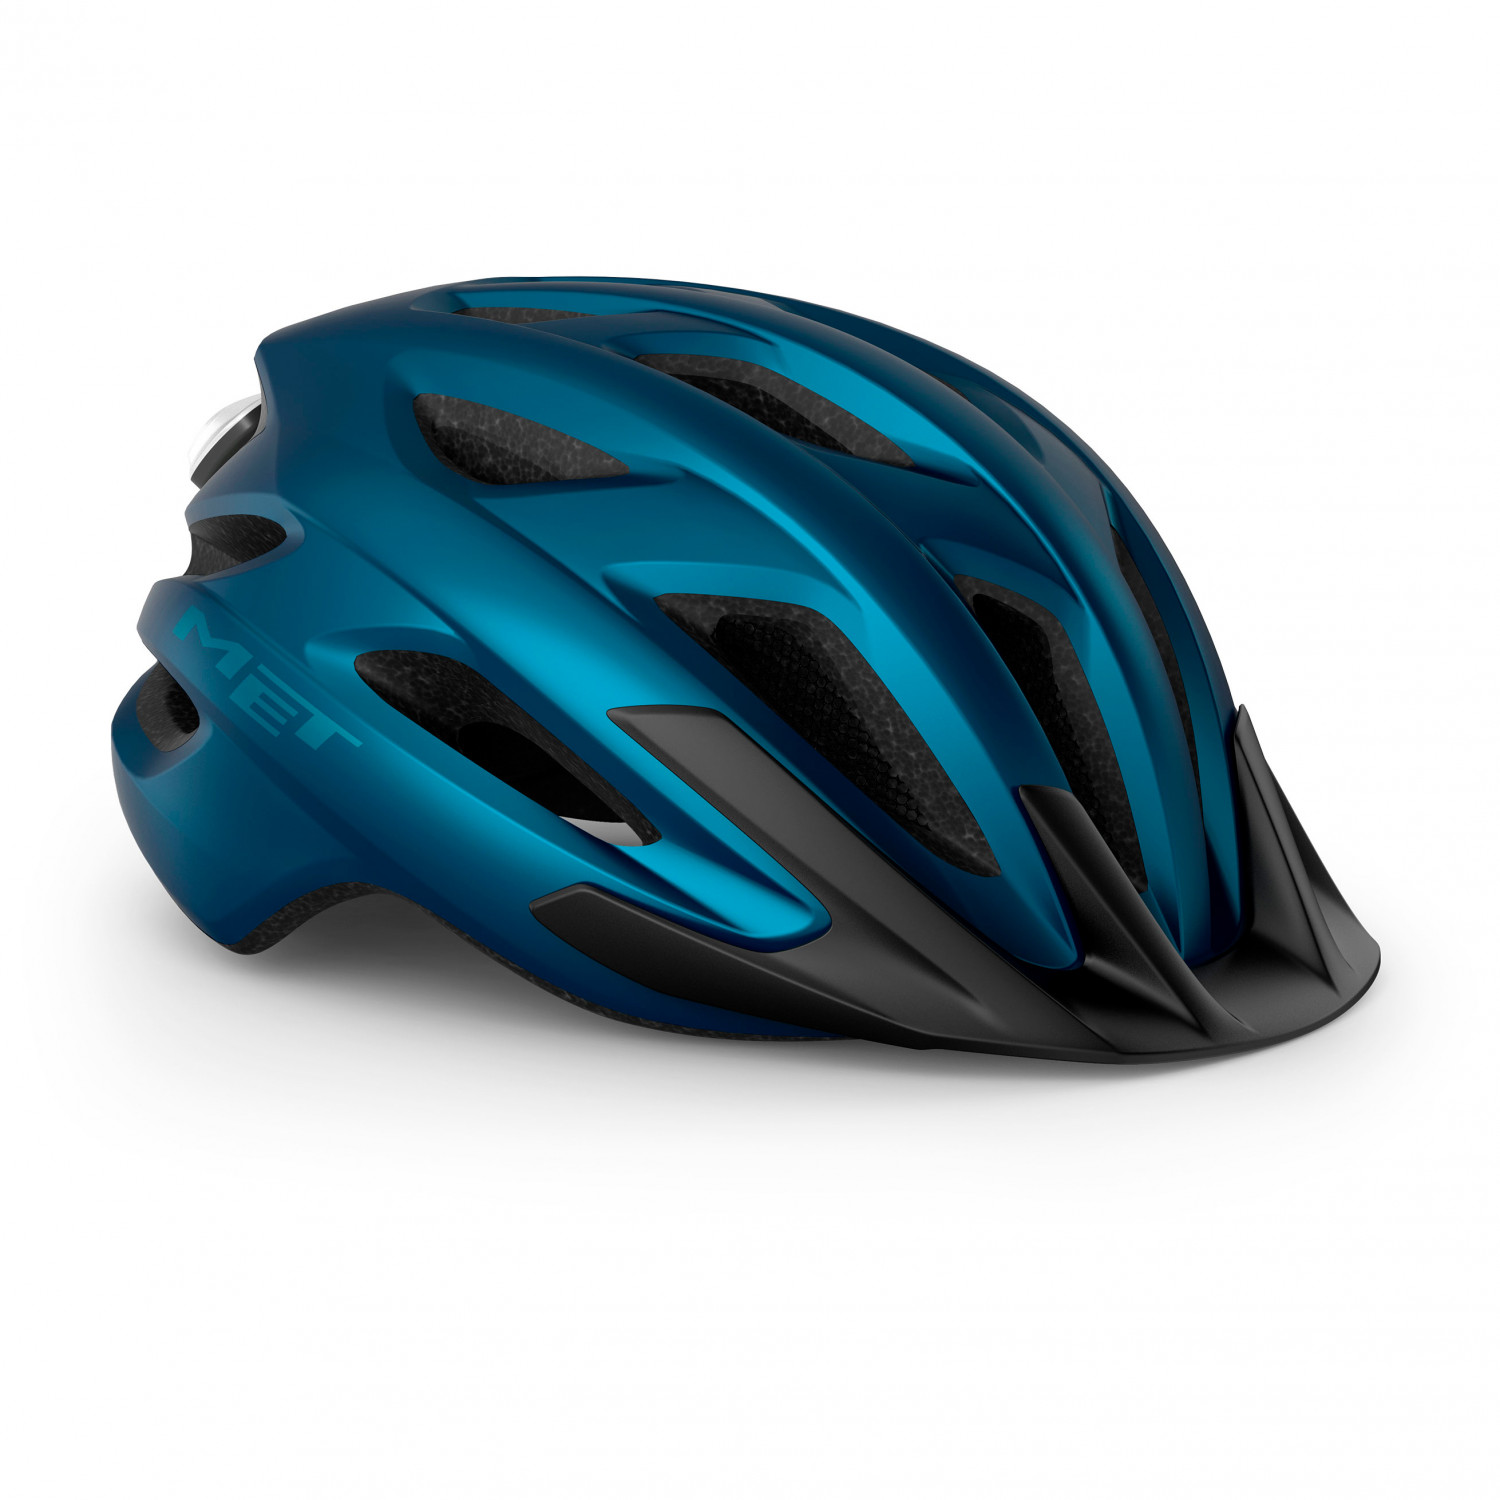 Велосипедный шлем Met Crossover, цвет Metallic Blue